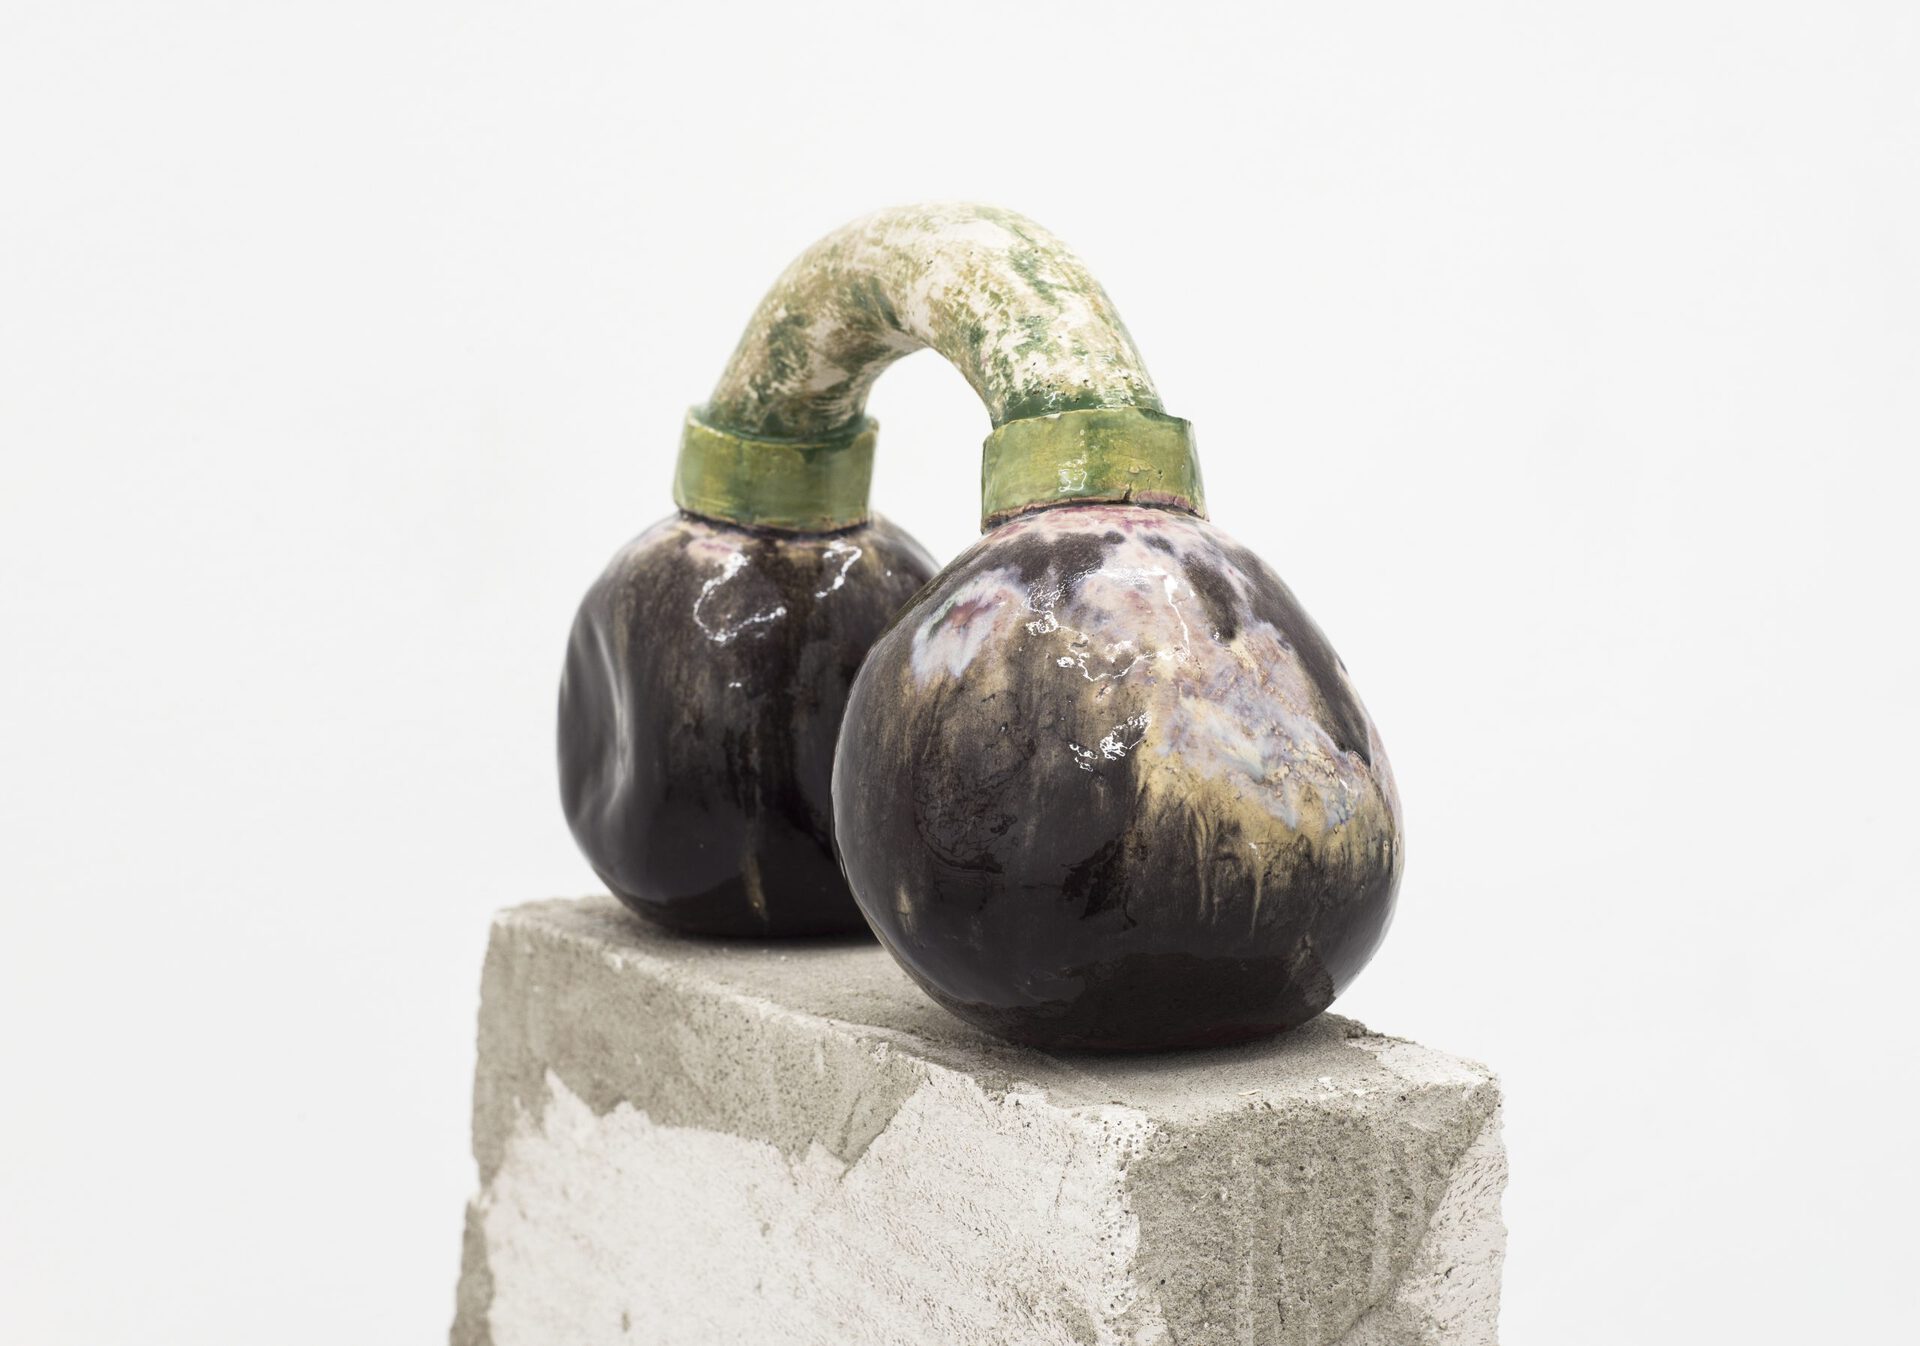 Harry Hachmeister, Squeeze, glazed ceramic, 35 x 14 x 22 cm, 2020